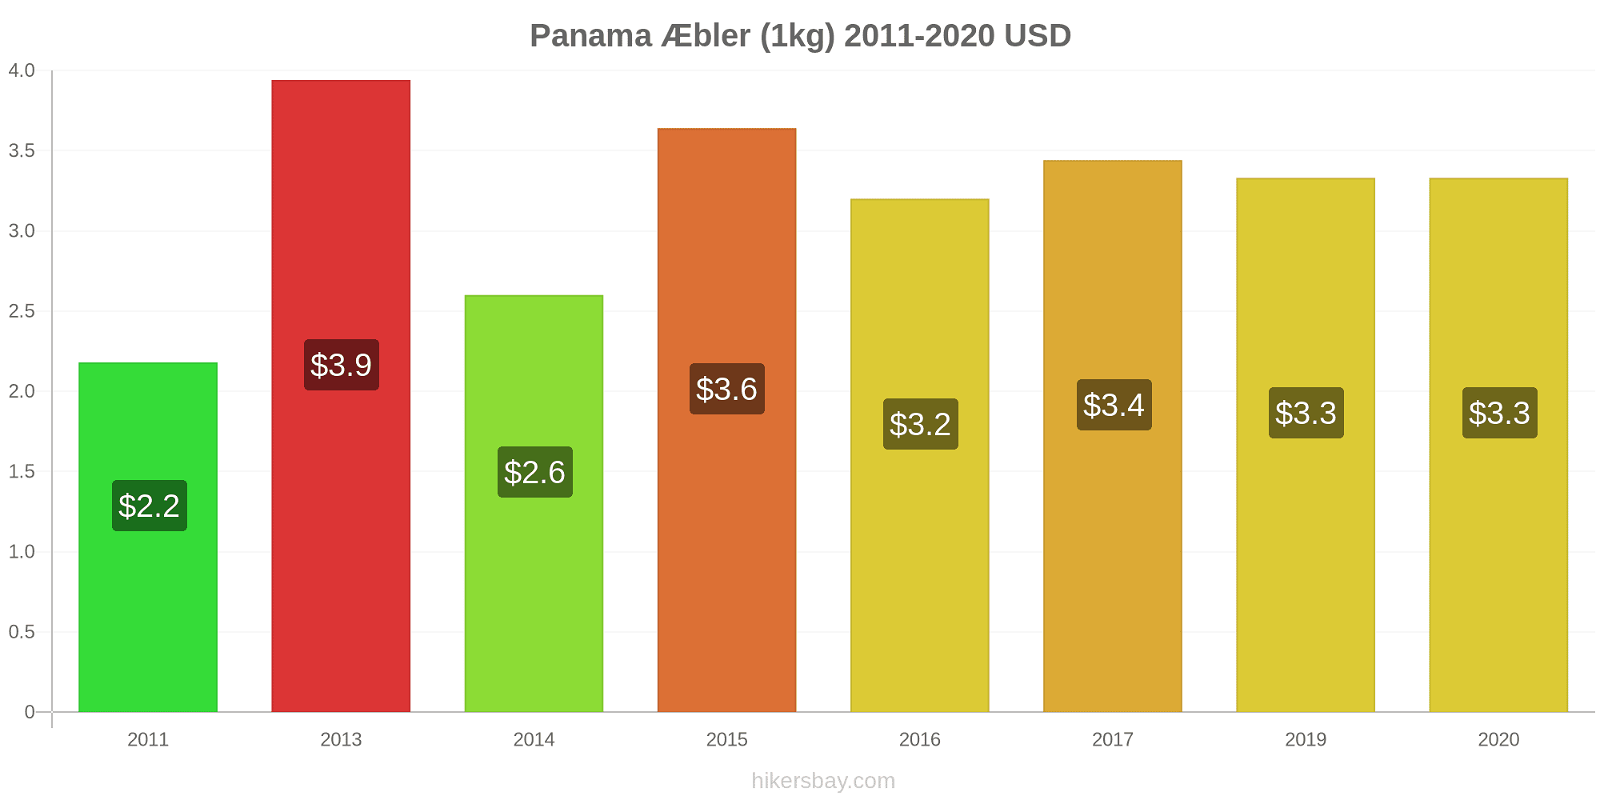 Panama prisændringer Æbler (1kg) hikersbay.com